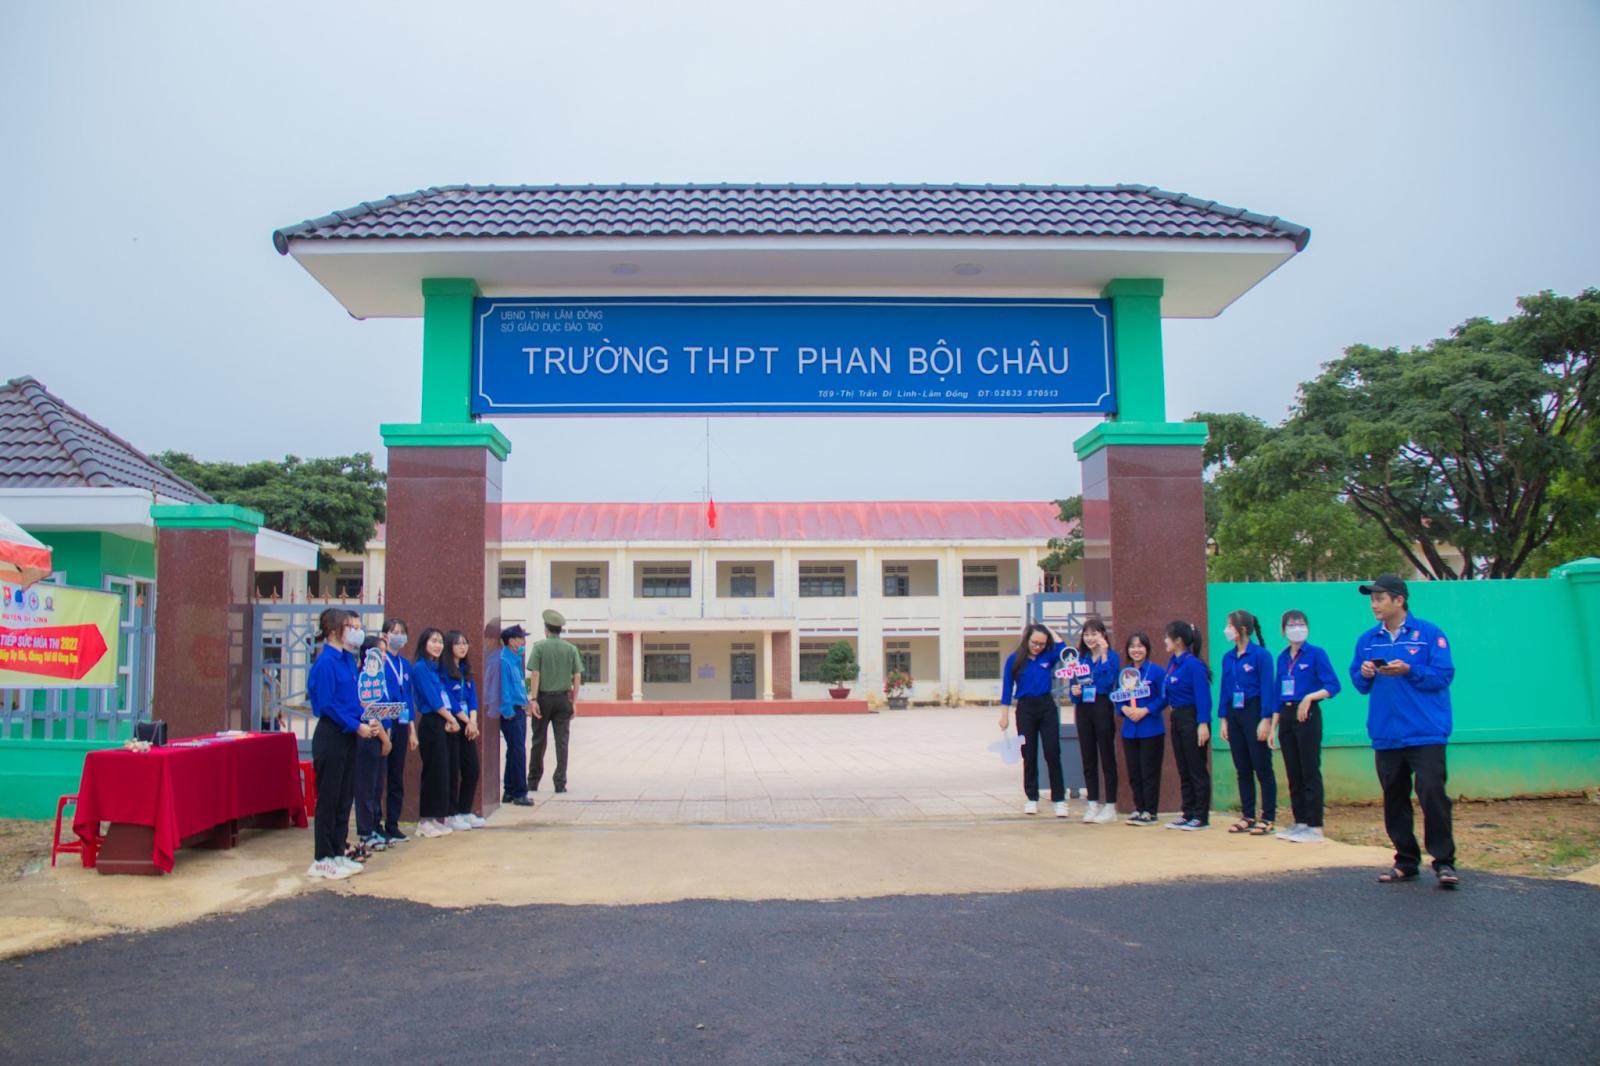 Đánh Giá Trường THPT Phan Bội Châu Lâm Đồng Có Tốt Không